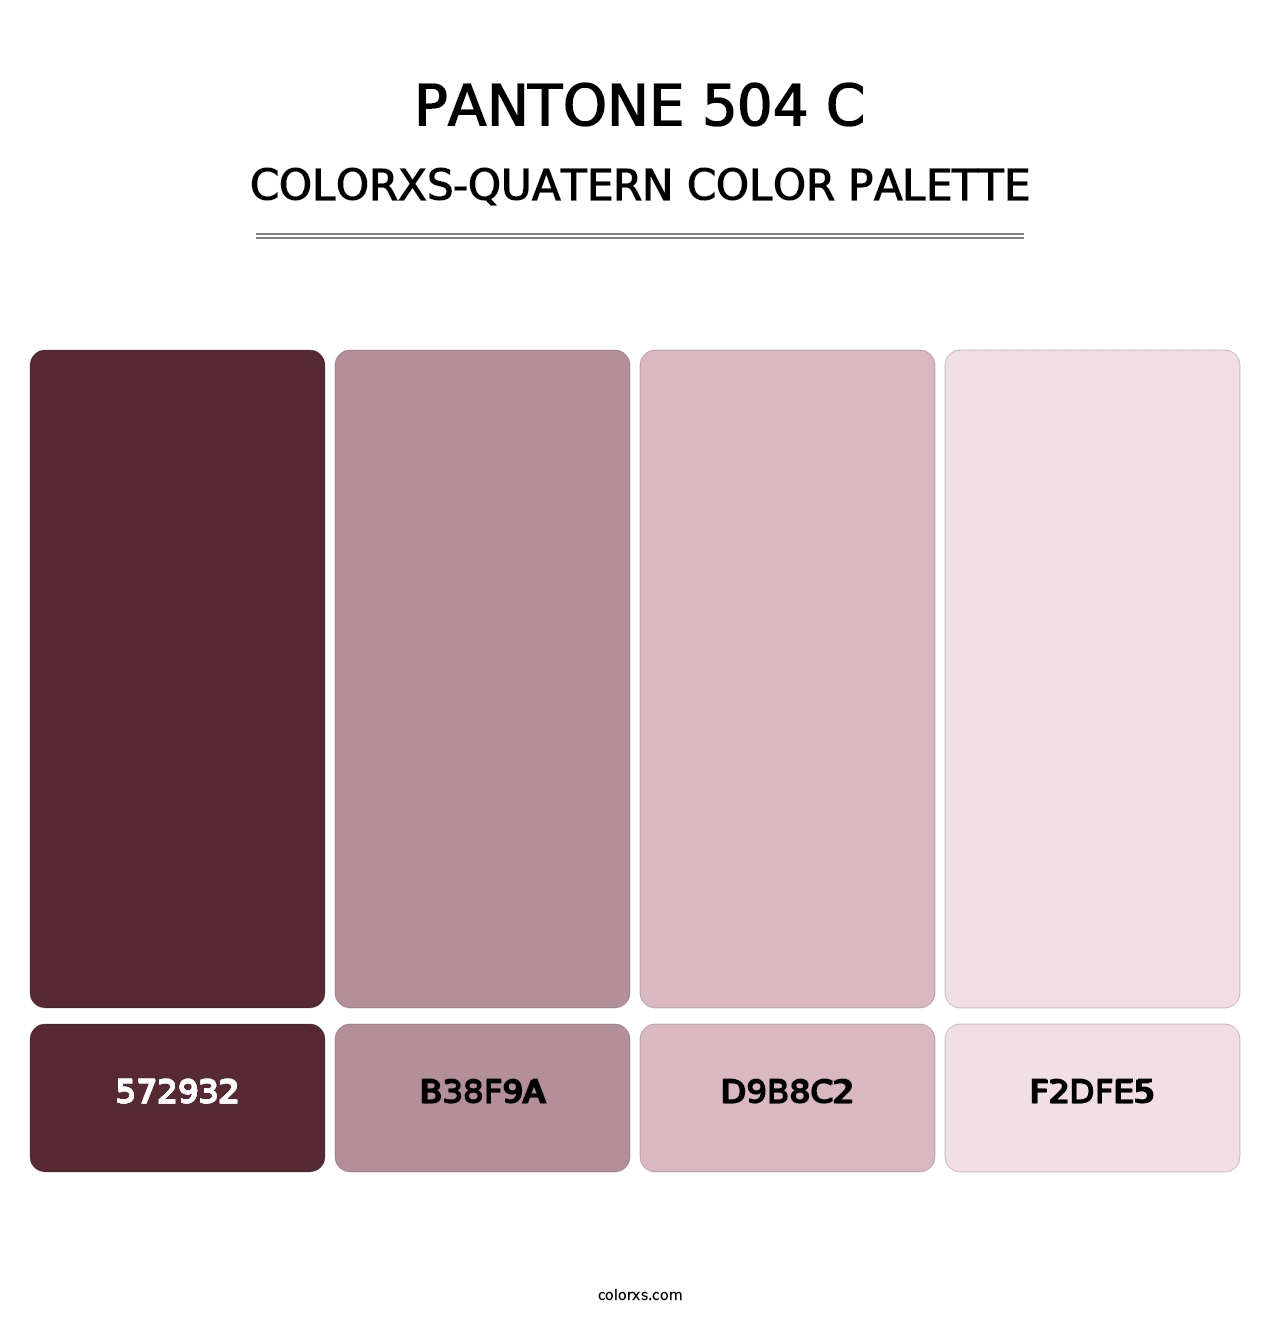 PANTONE 504 C - Colorxs Quatern Palette